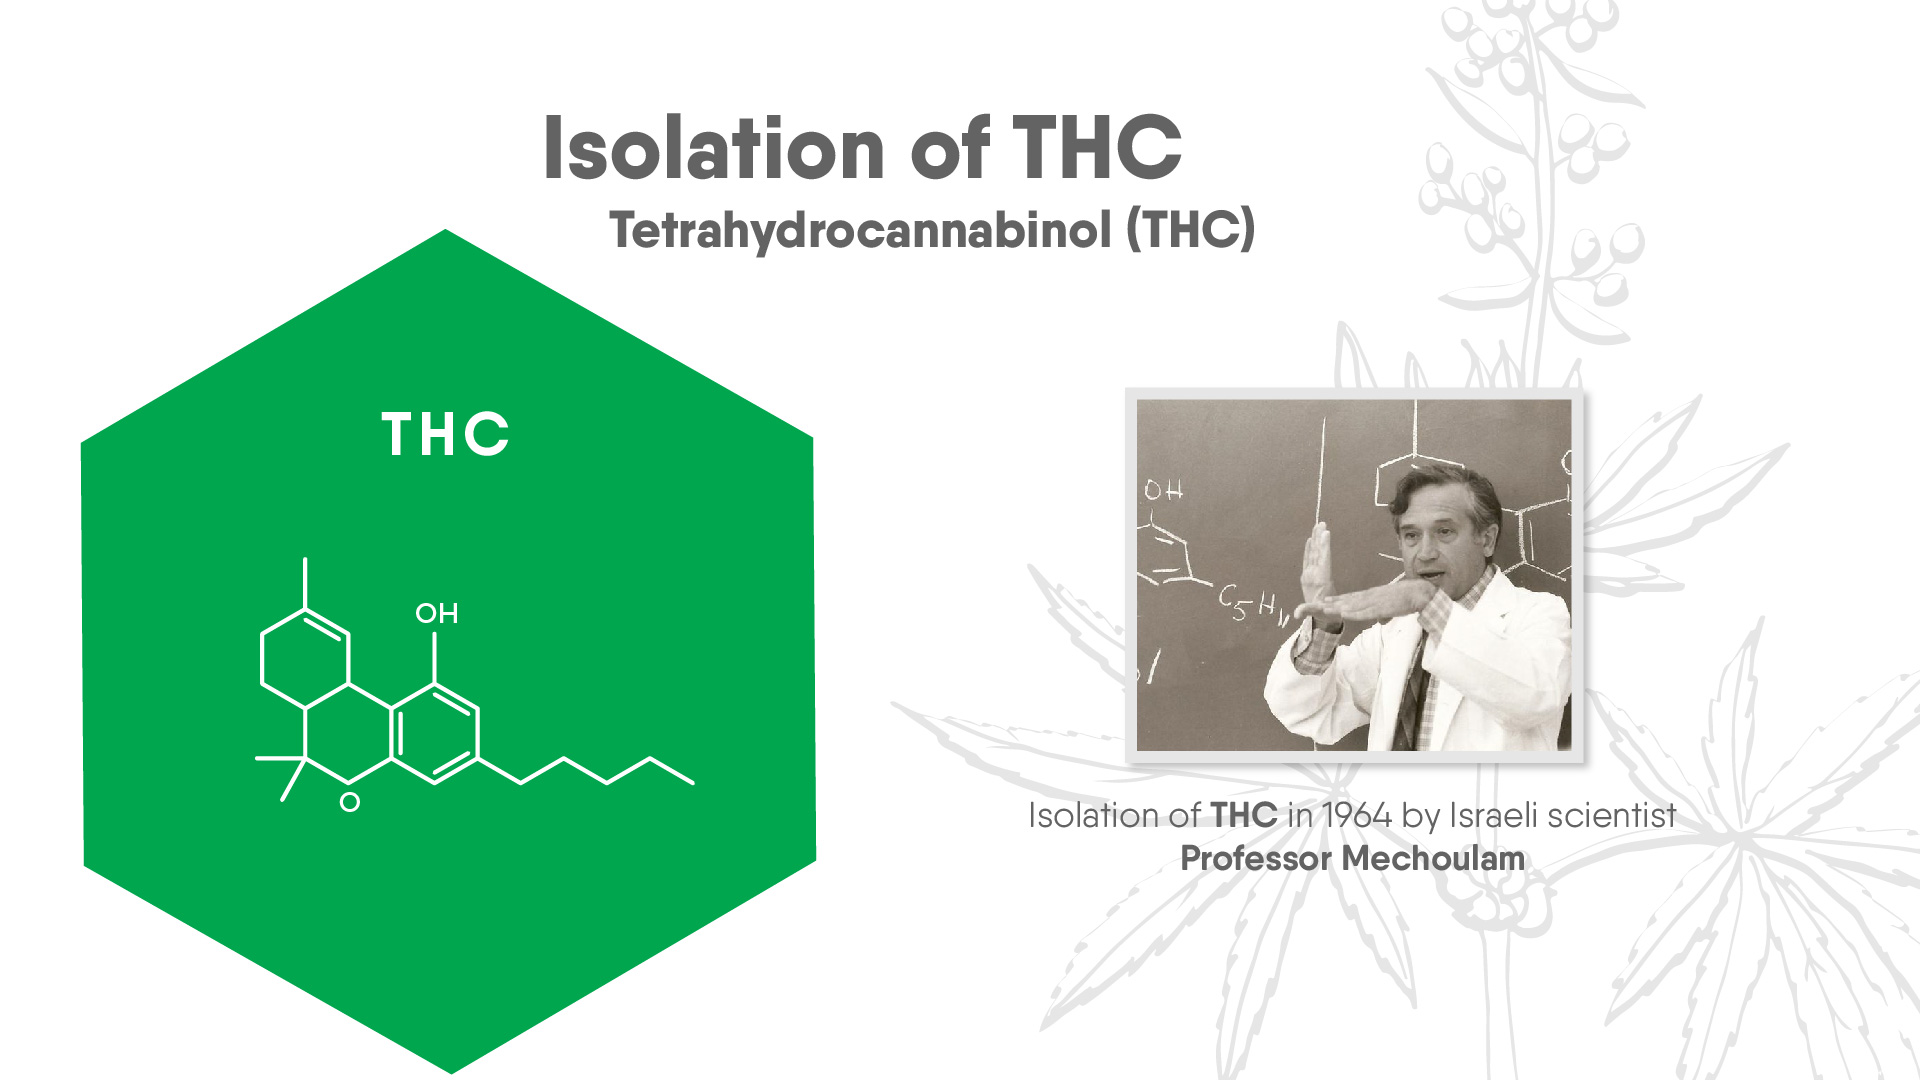 Isolation of THC, Tetrahydrocannabinol